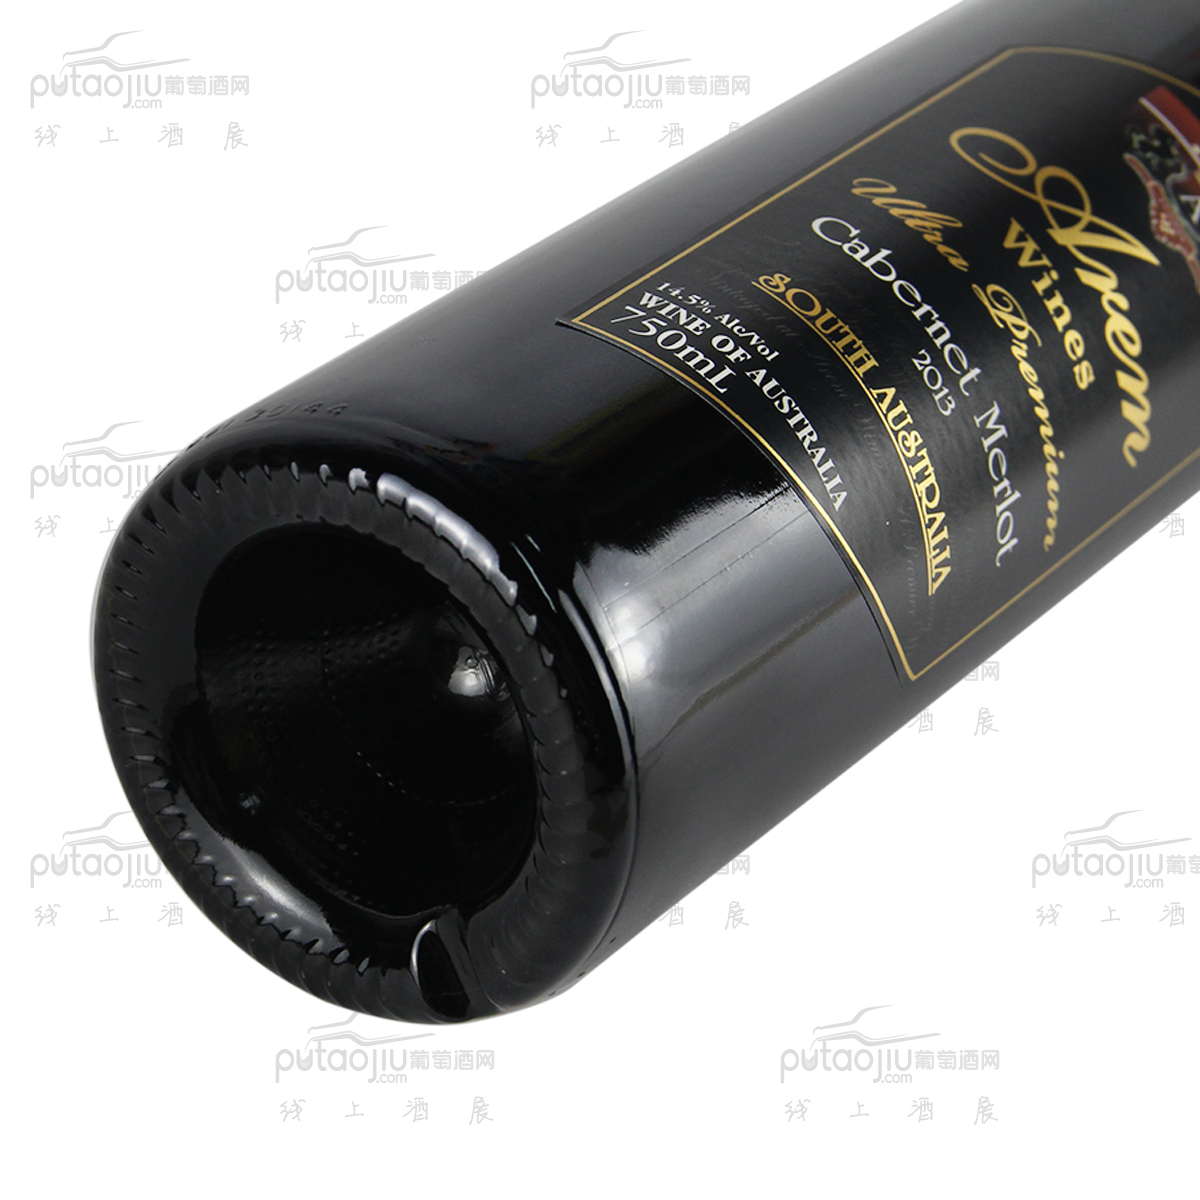 澳大利亚高奔产区澳宝红酒庄混酿超优质黑宝干红葡萄酒